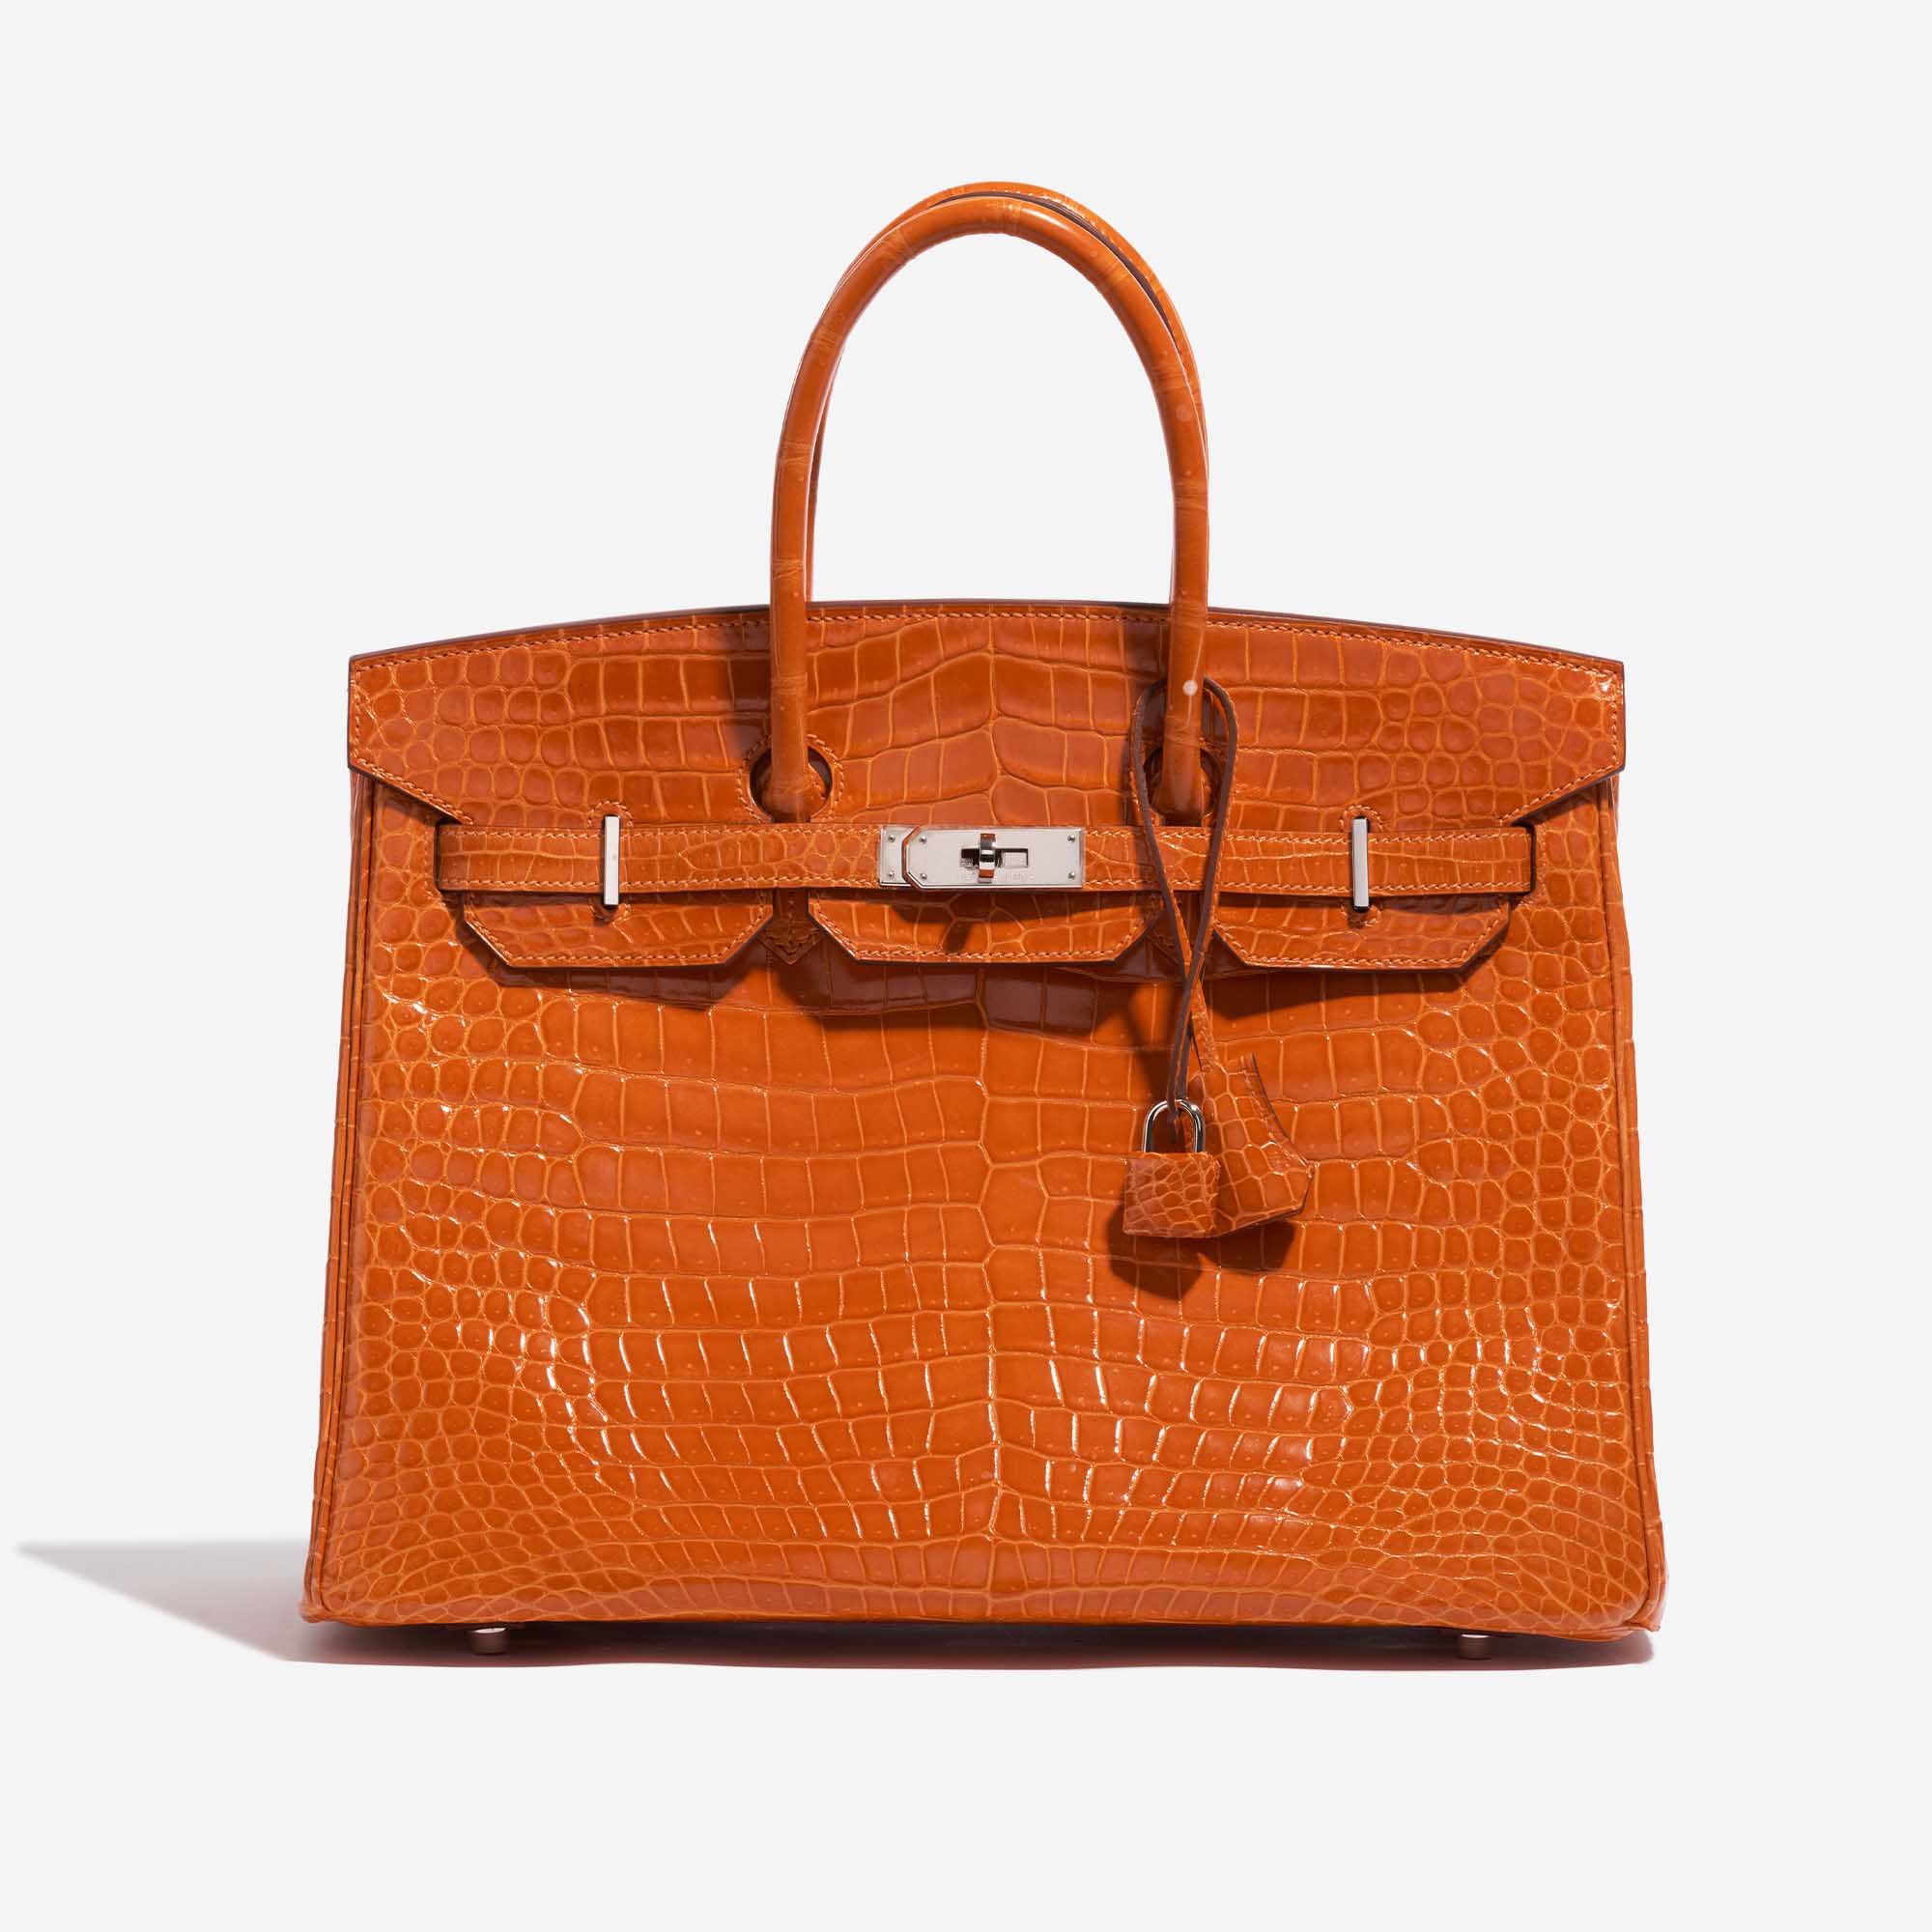 Pre-owned Hermès Tasche Birkin 35 Porosus Crocodile Pain d'épice Orange Front | Verkaufen Sie Ihre Designer-Tasche auf Saclab.com